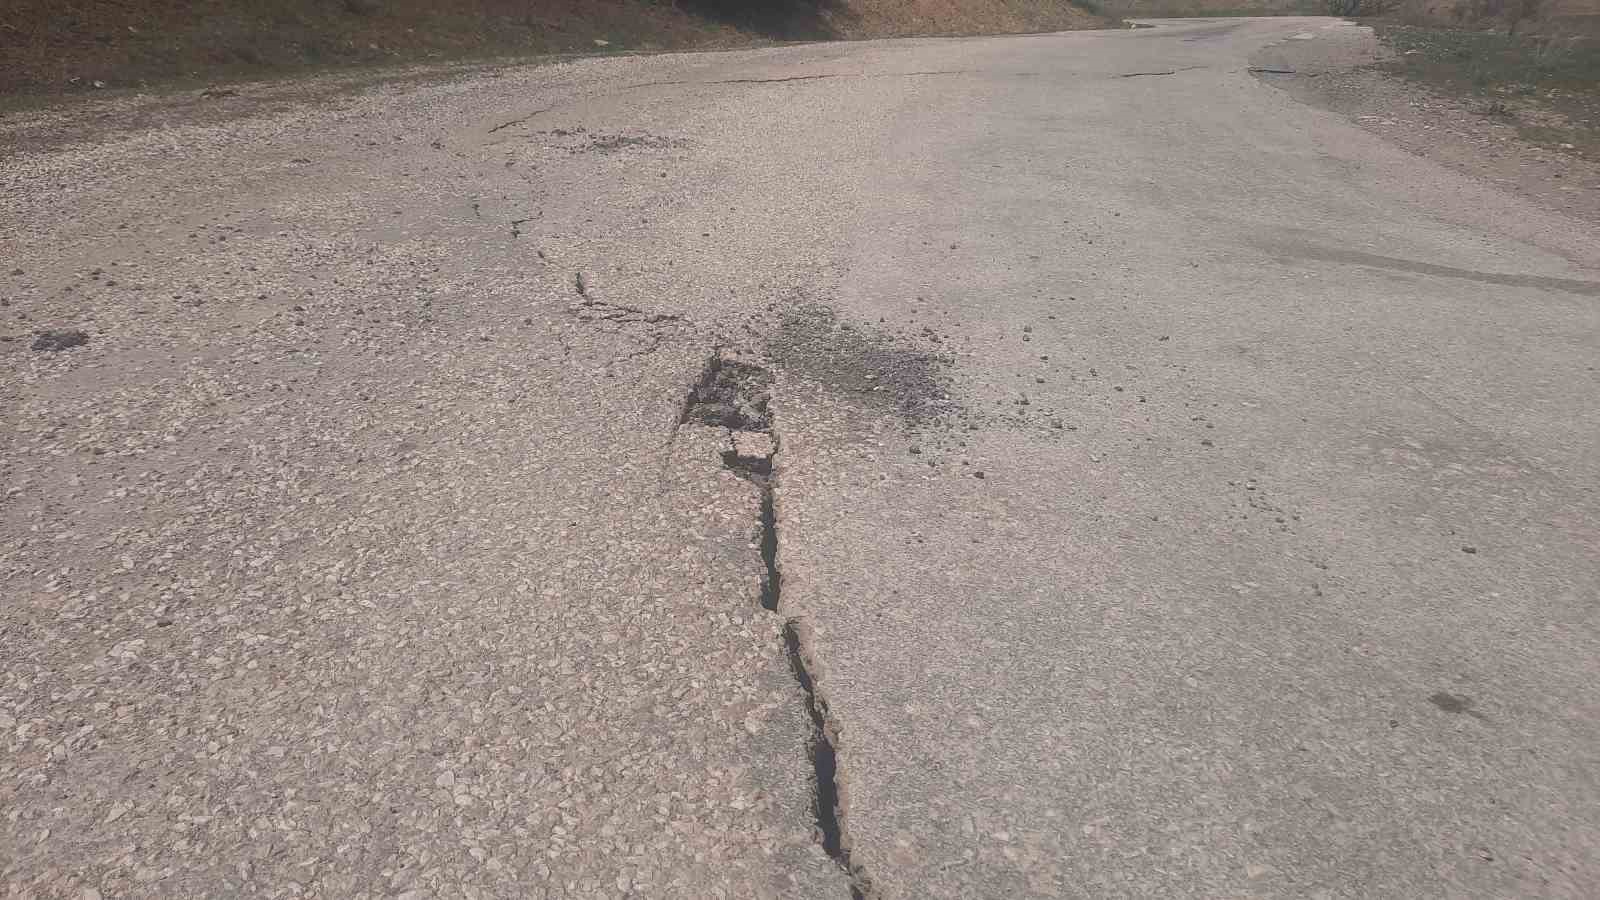 Tokat’ta deprem sonrası yollarda çatlaklar oluştu: “Ayakta zor durduk”